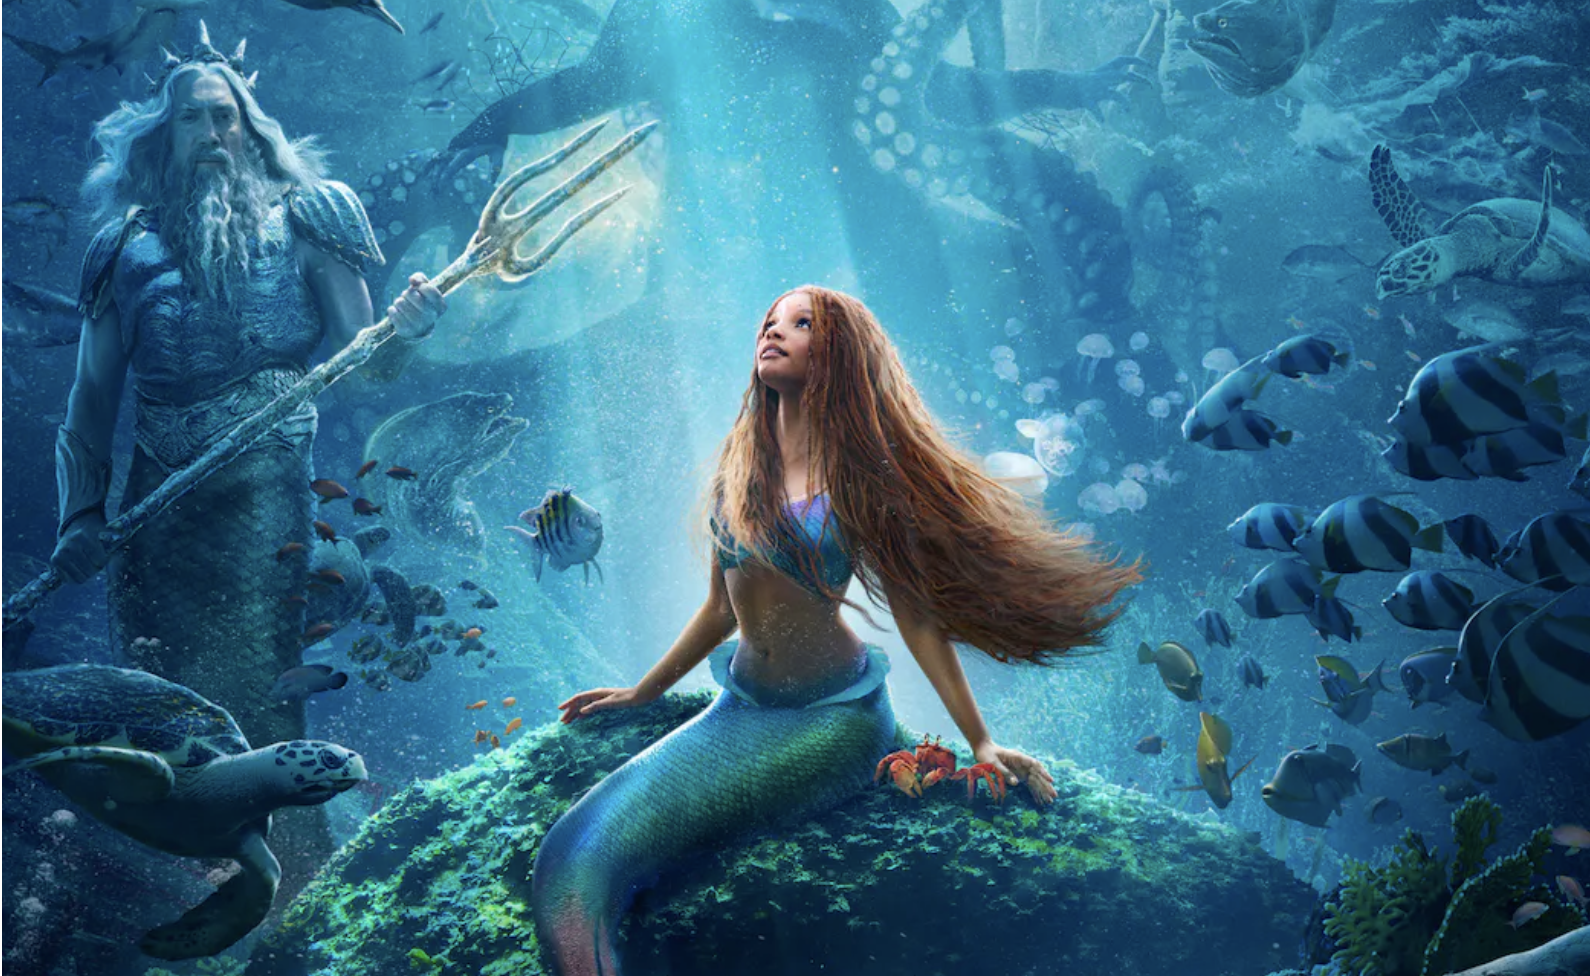 La Petite Sirène : loin de la version de Disney, la véritable